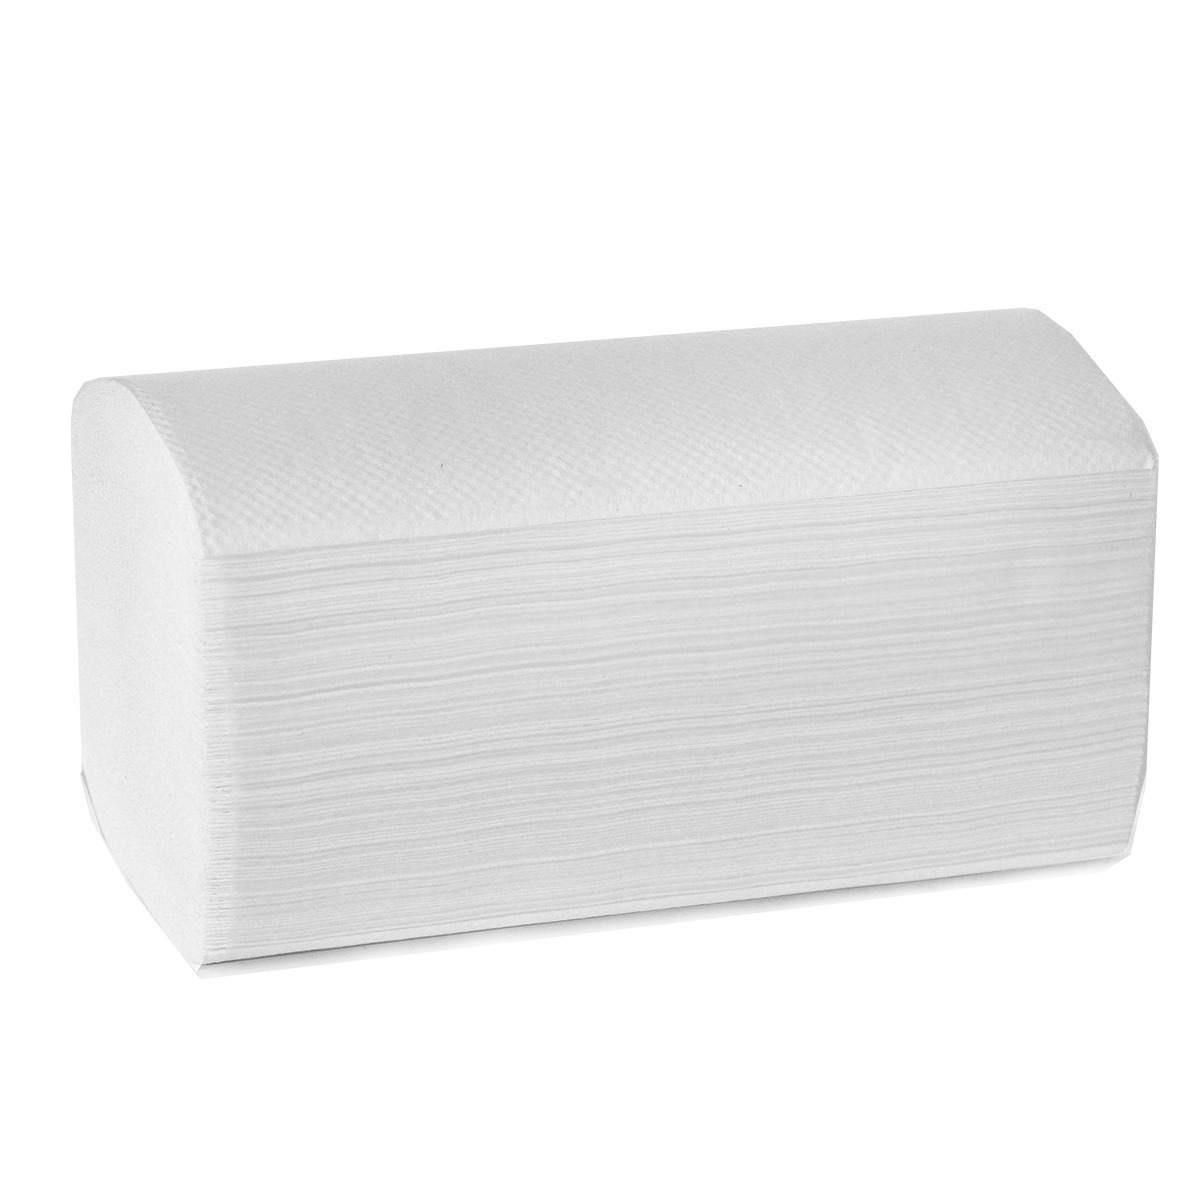 Листовые бумажные полотенца Premium NoName Z-сложения 216*240 мм, 2 слоя белые 150 листов (Z32-150)